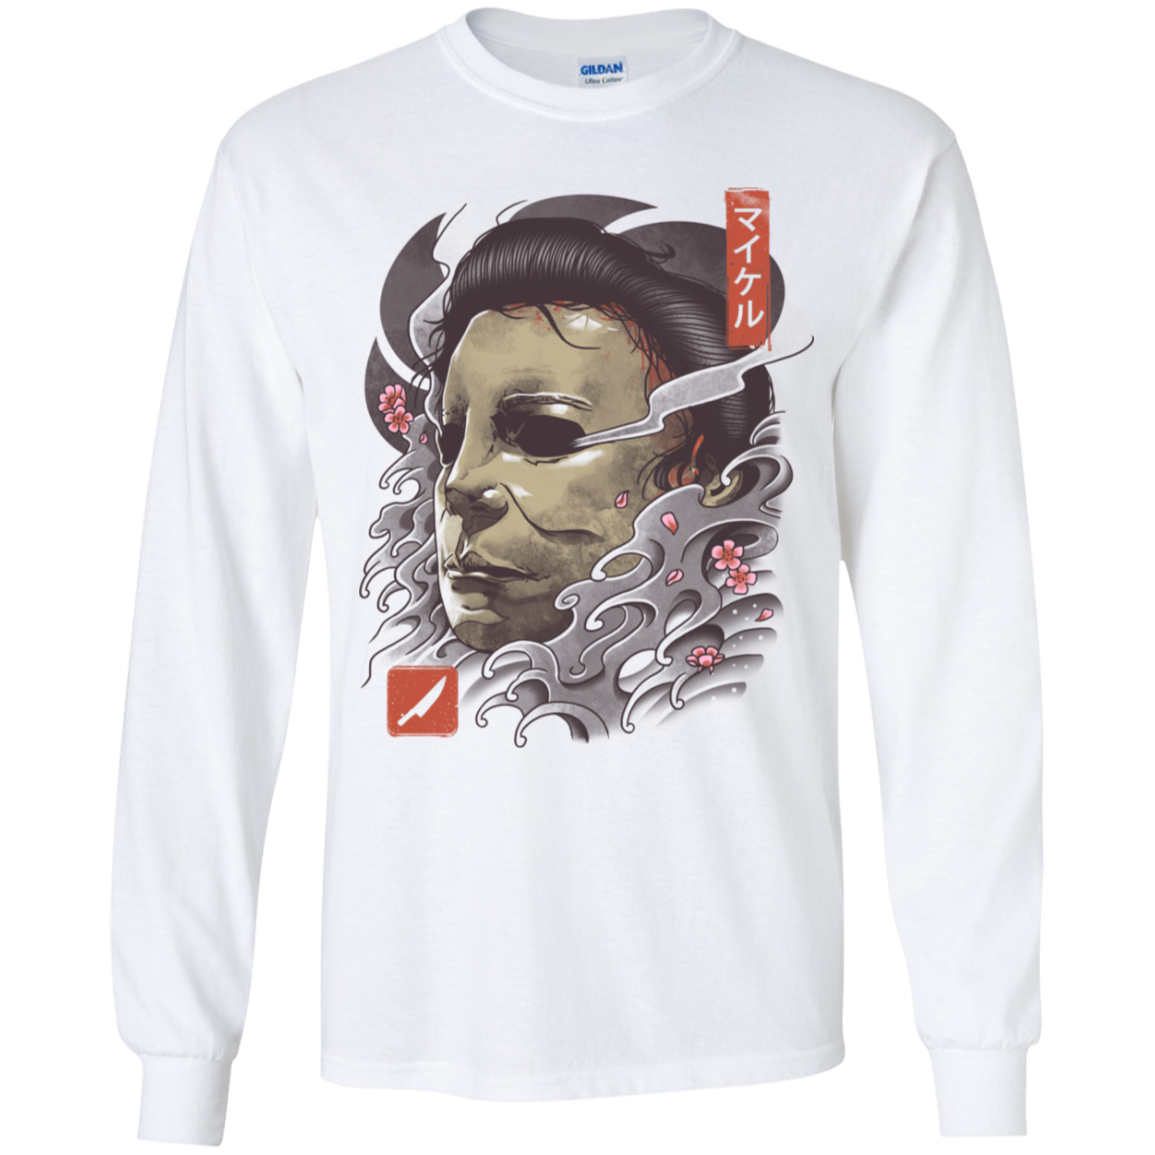 Oni Slasher Mask Youth Long Sleeve T-Shirt